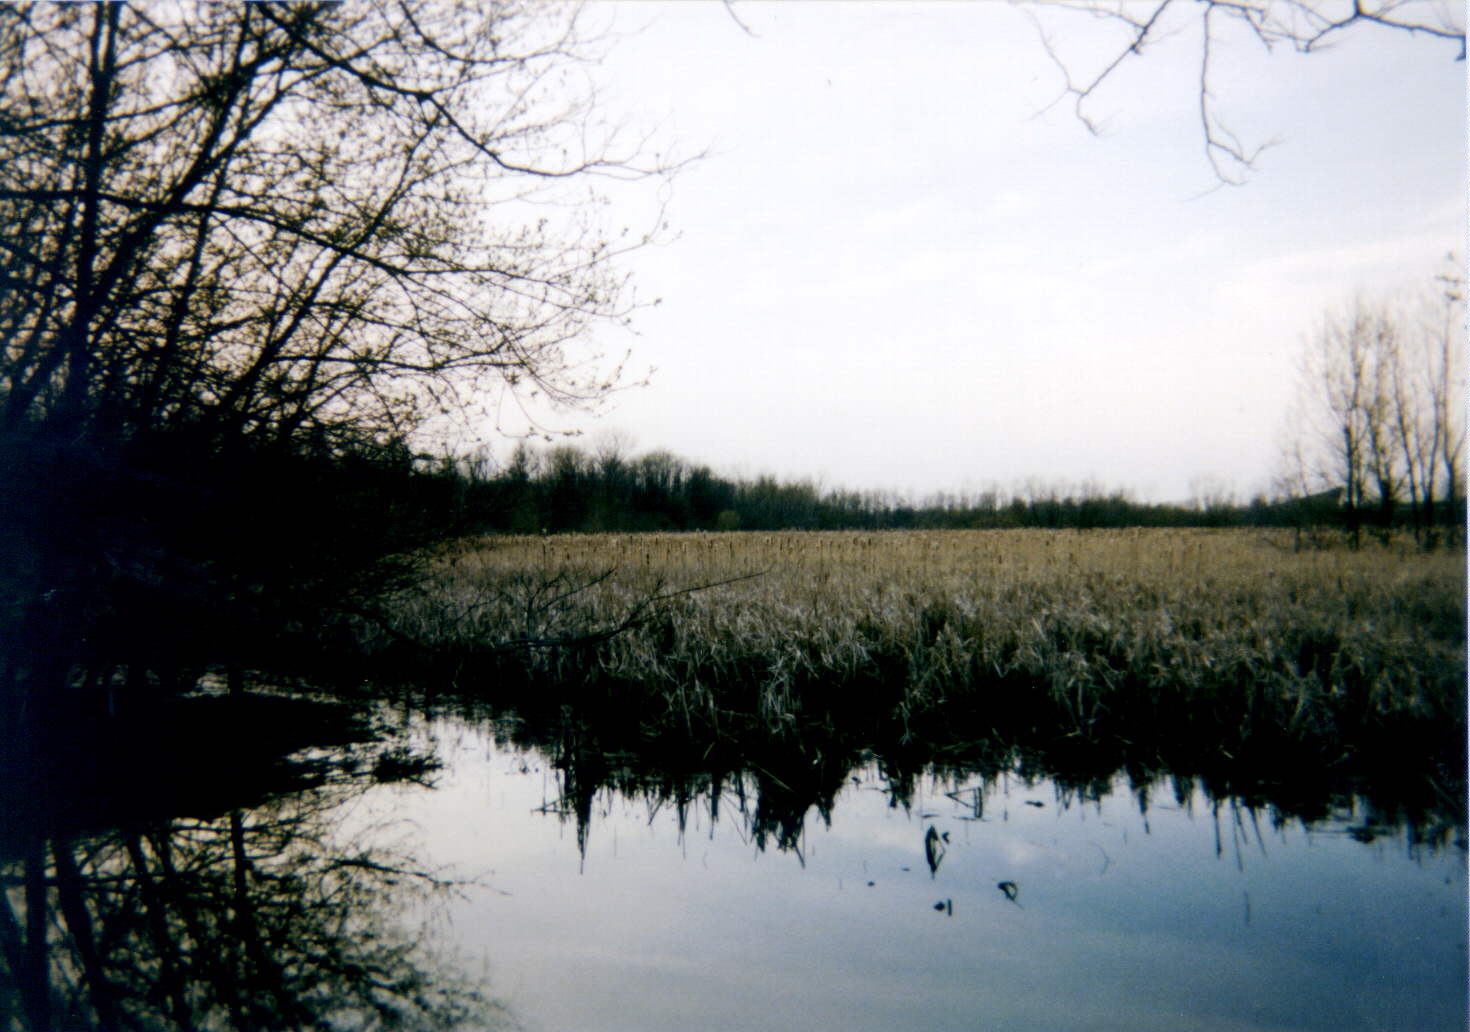 wetland